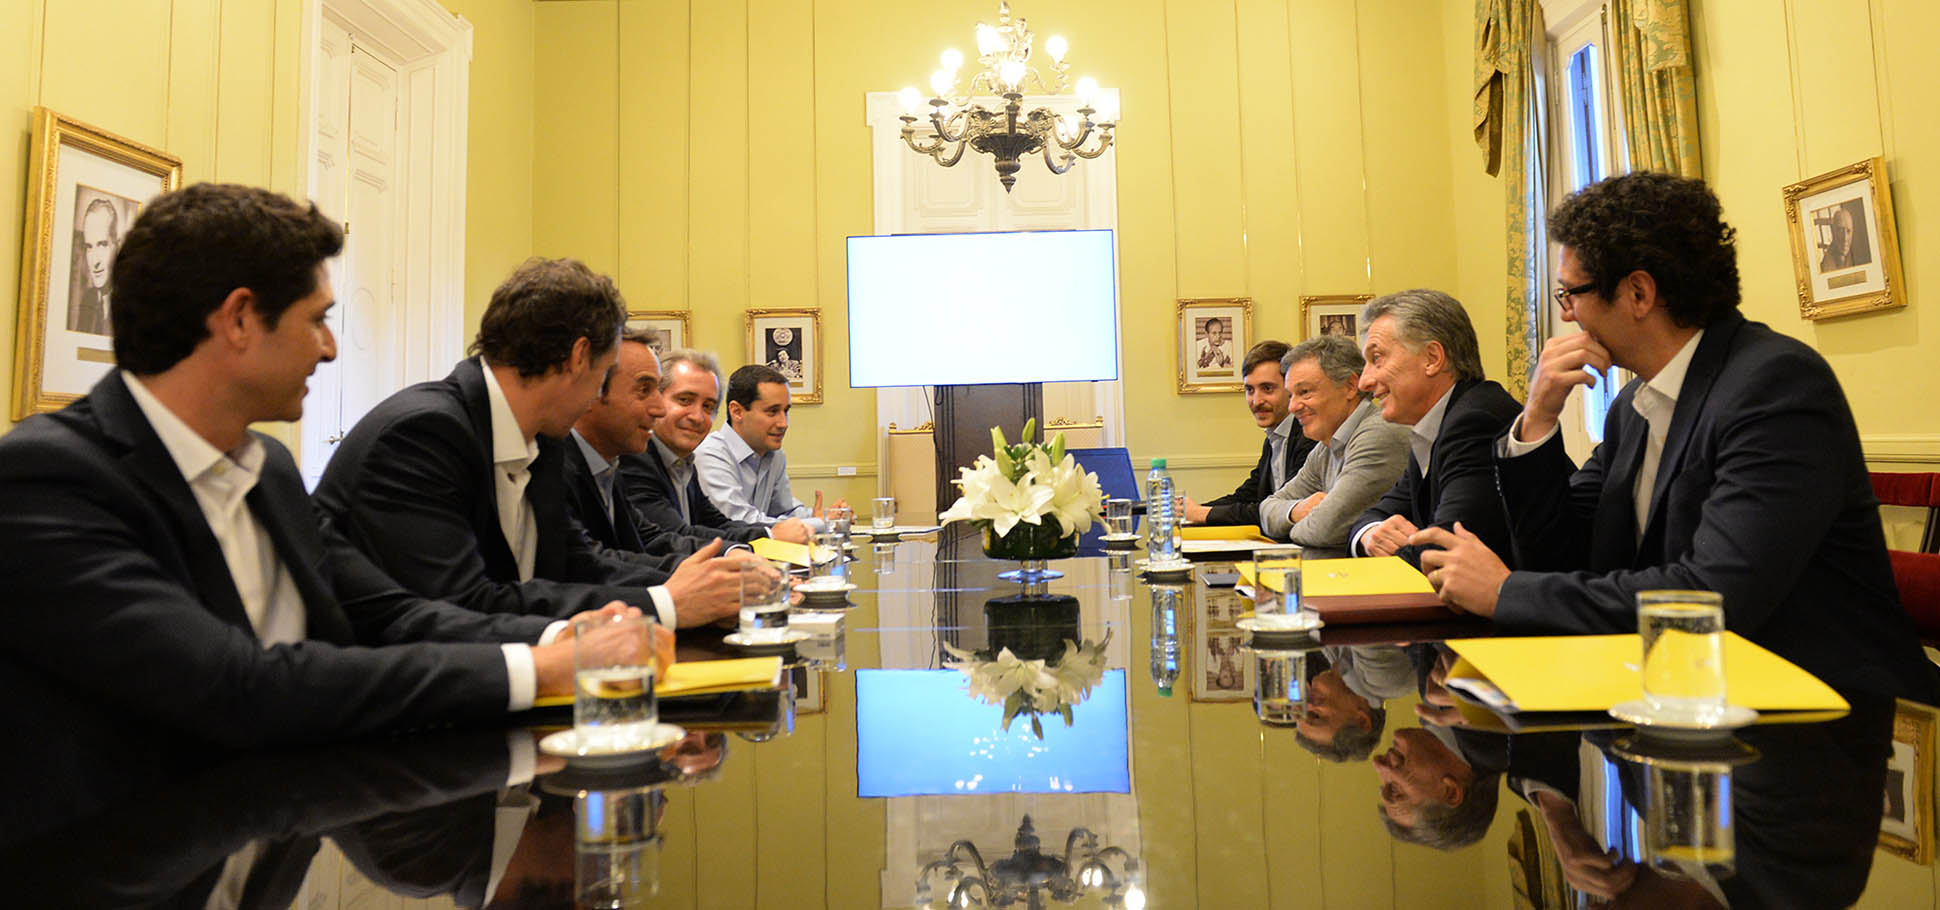 El presidente Macri recibió a autoridades de la empresa Mercado Libre